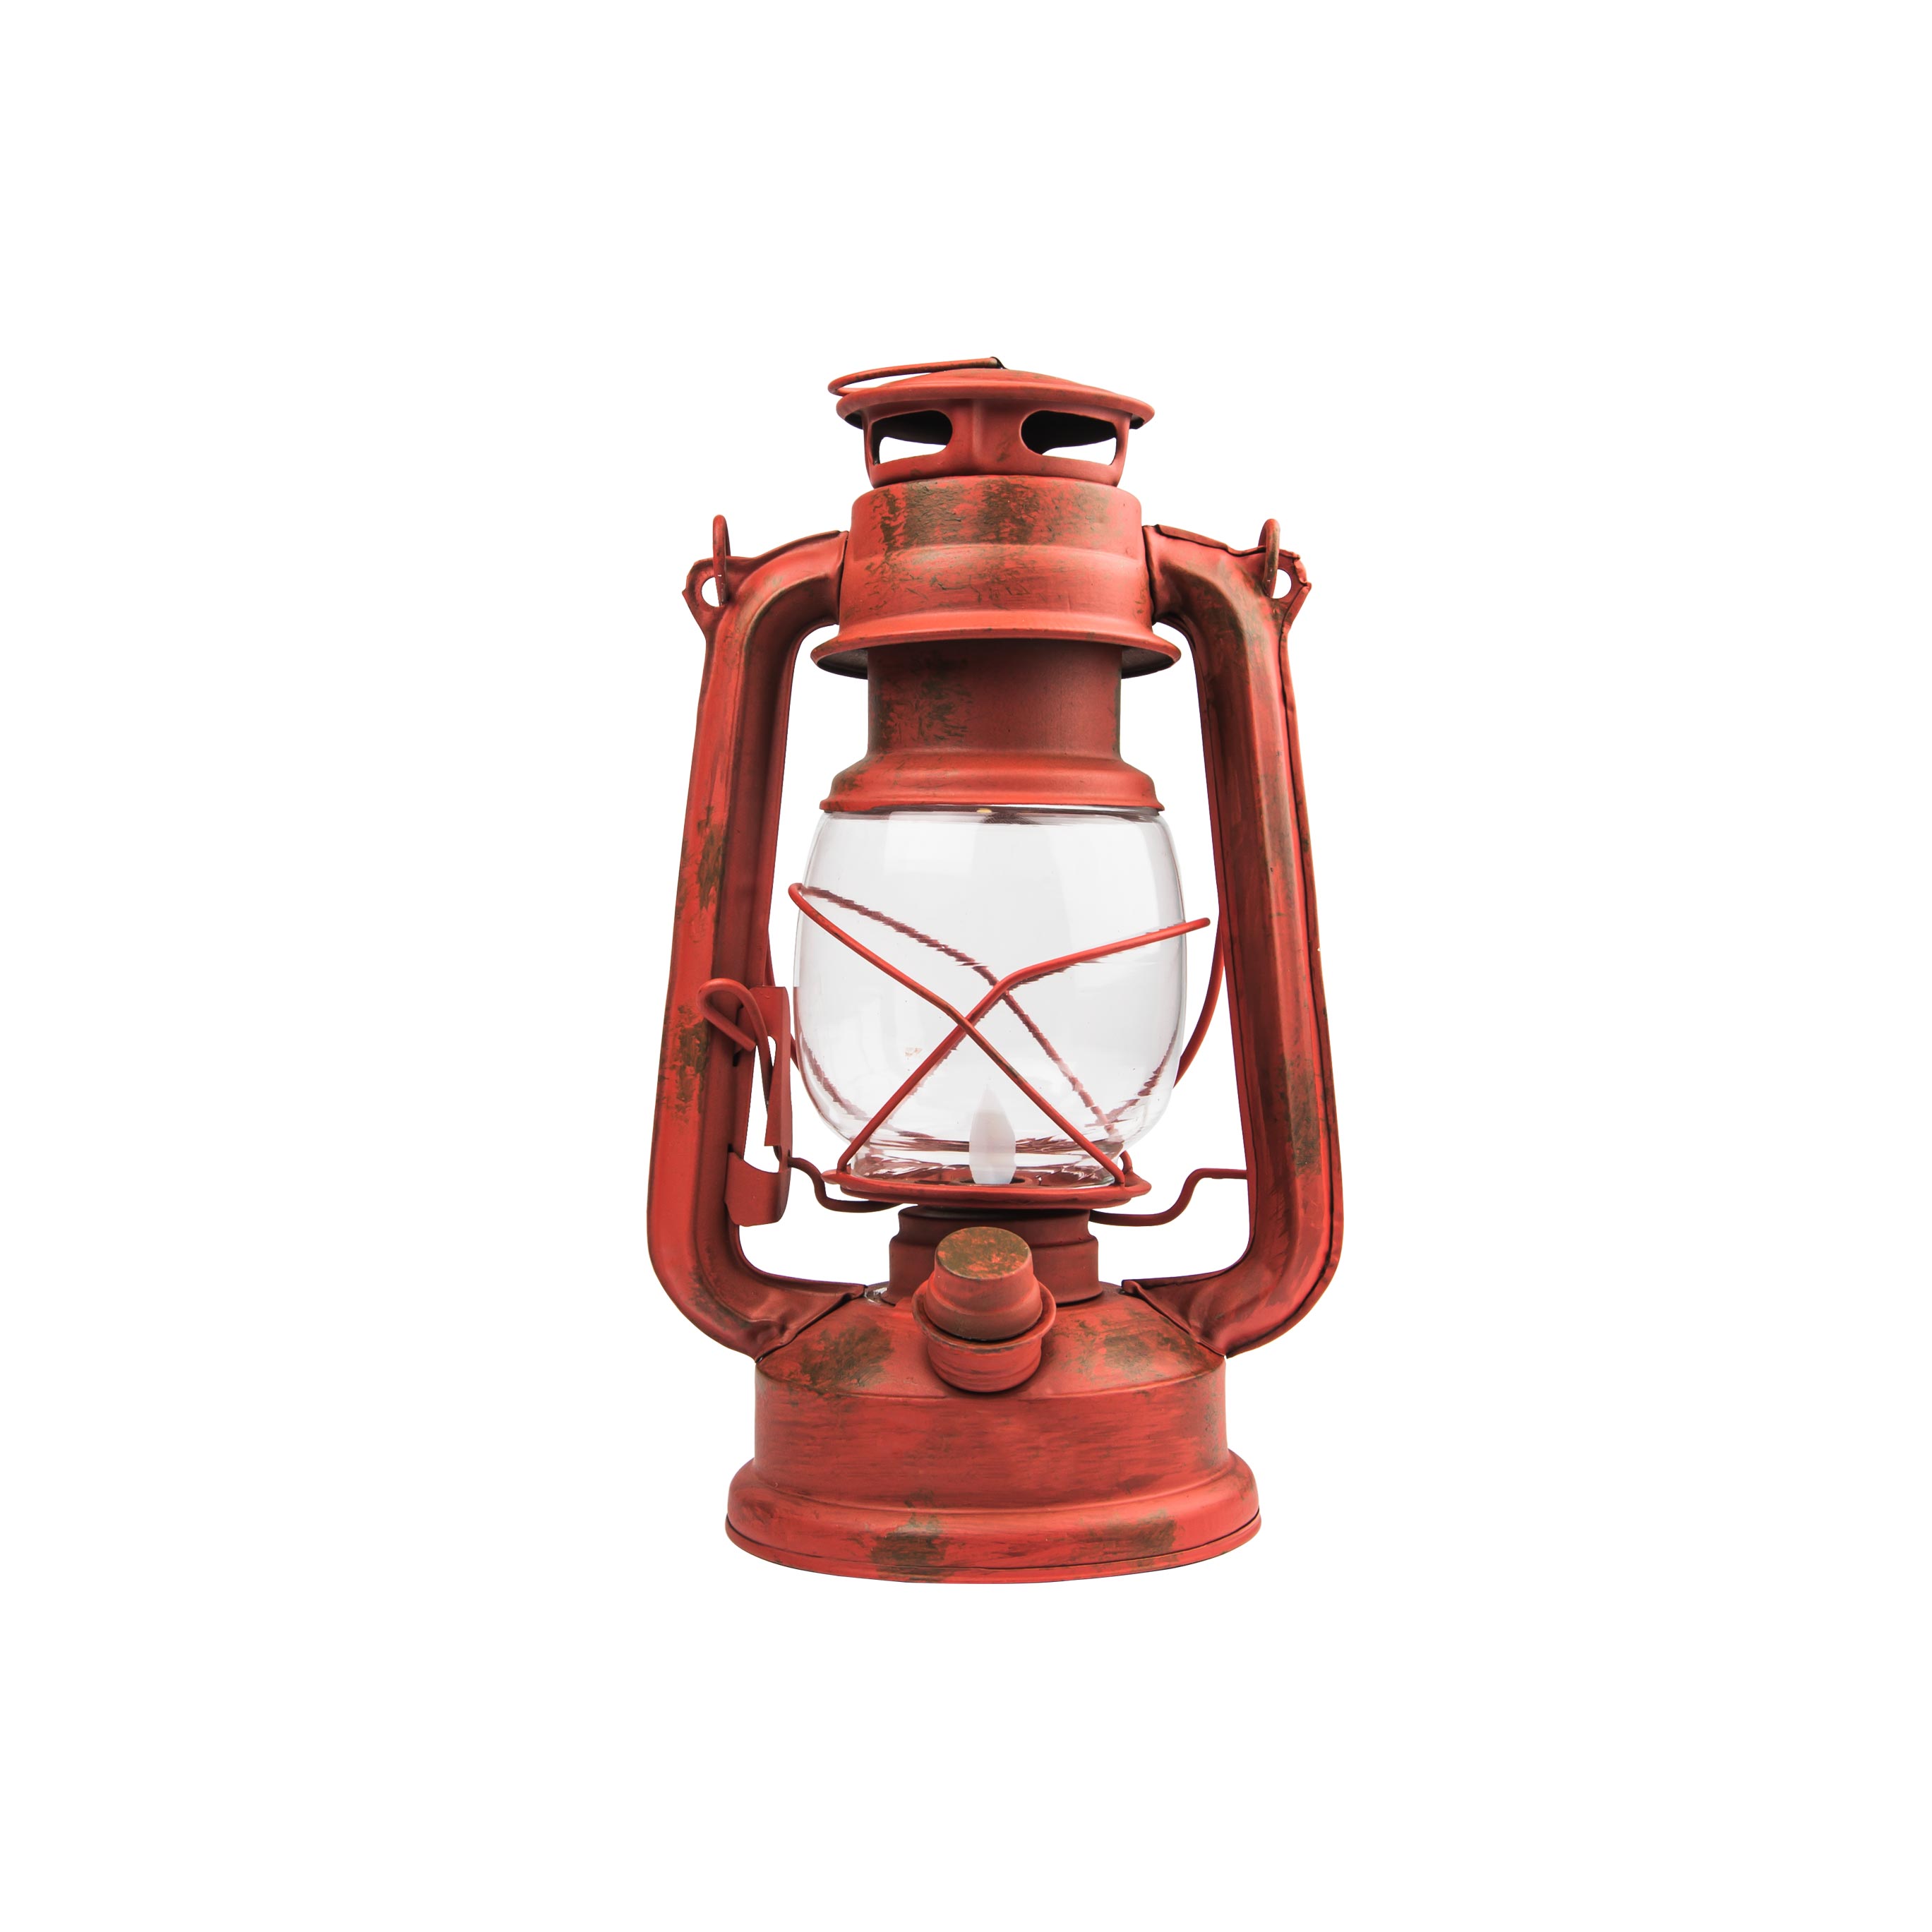 NEBO - Old Red Lantern